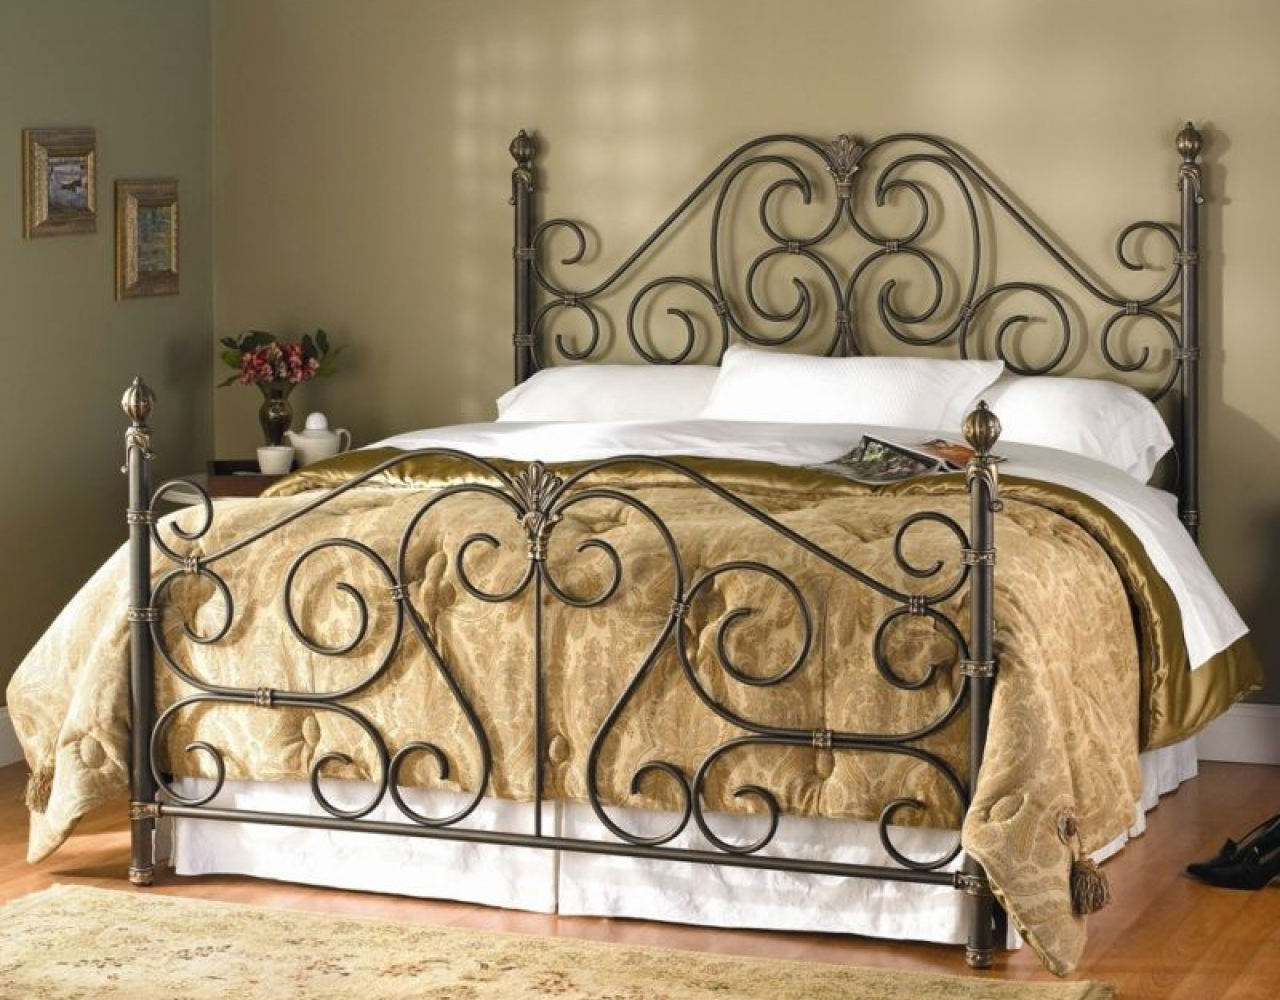 Кованая кровать с орнаментом из волют КРВ-051